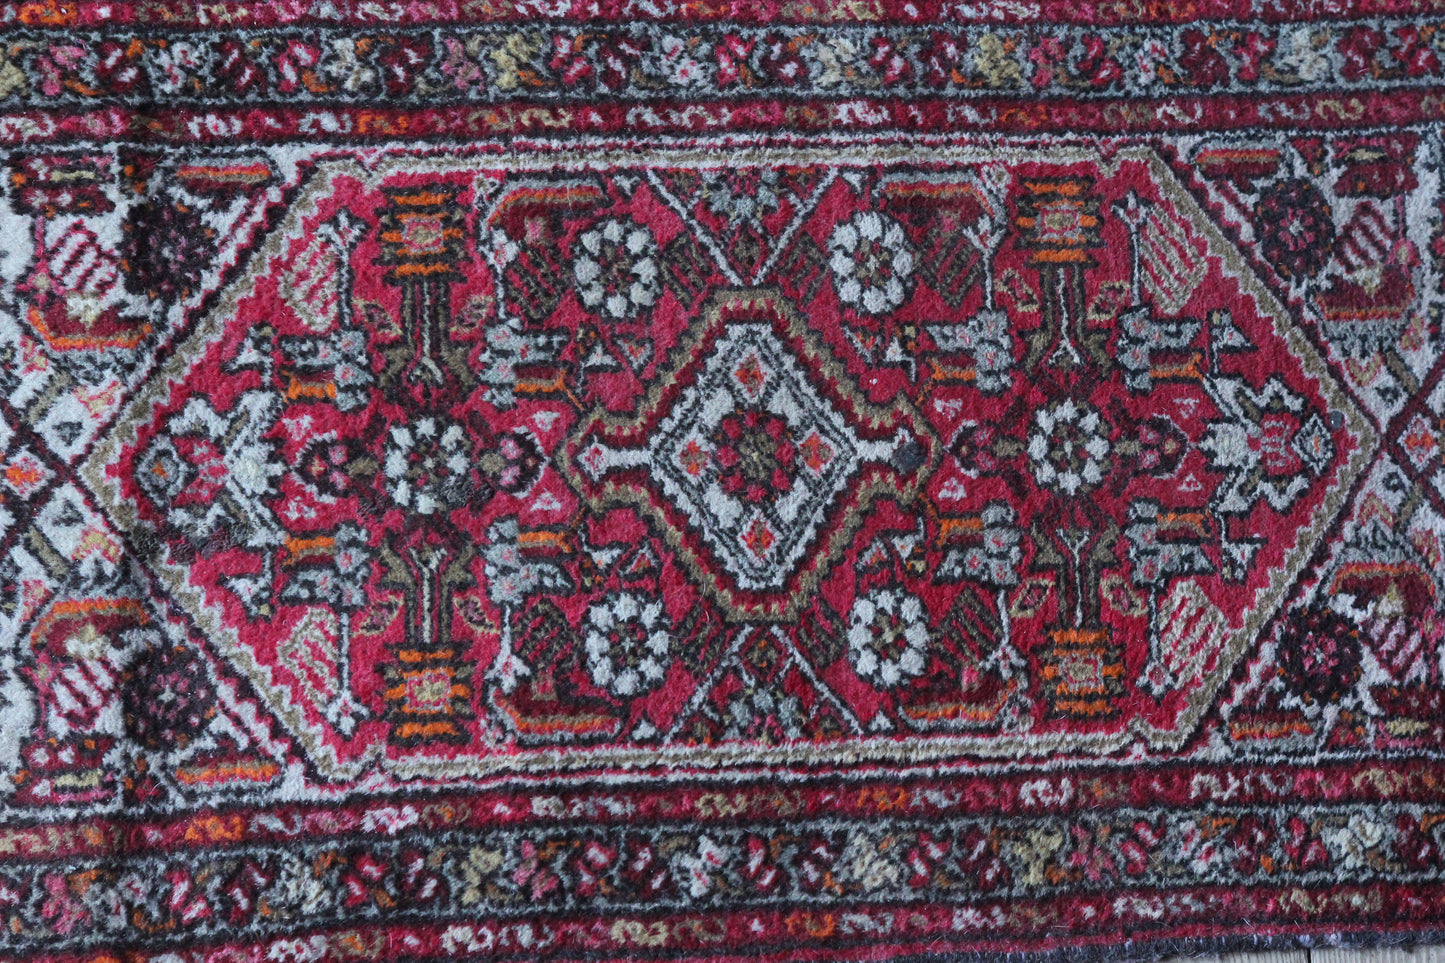 29" x 51" Vintage Handmade Rug